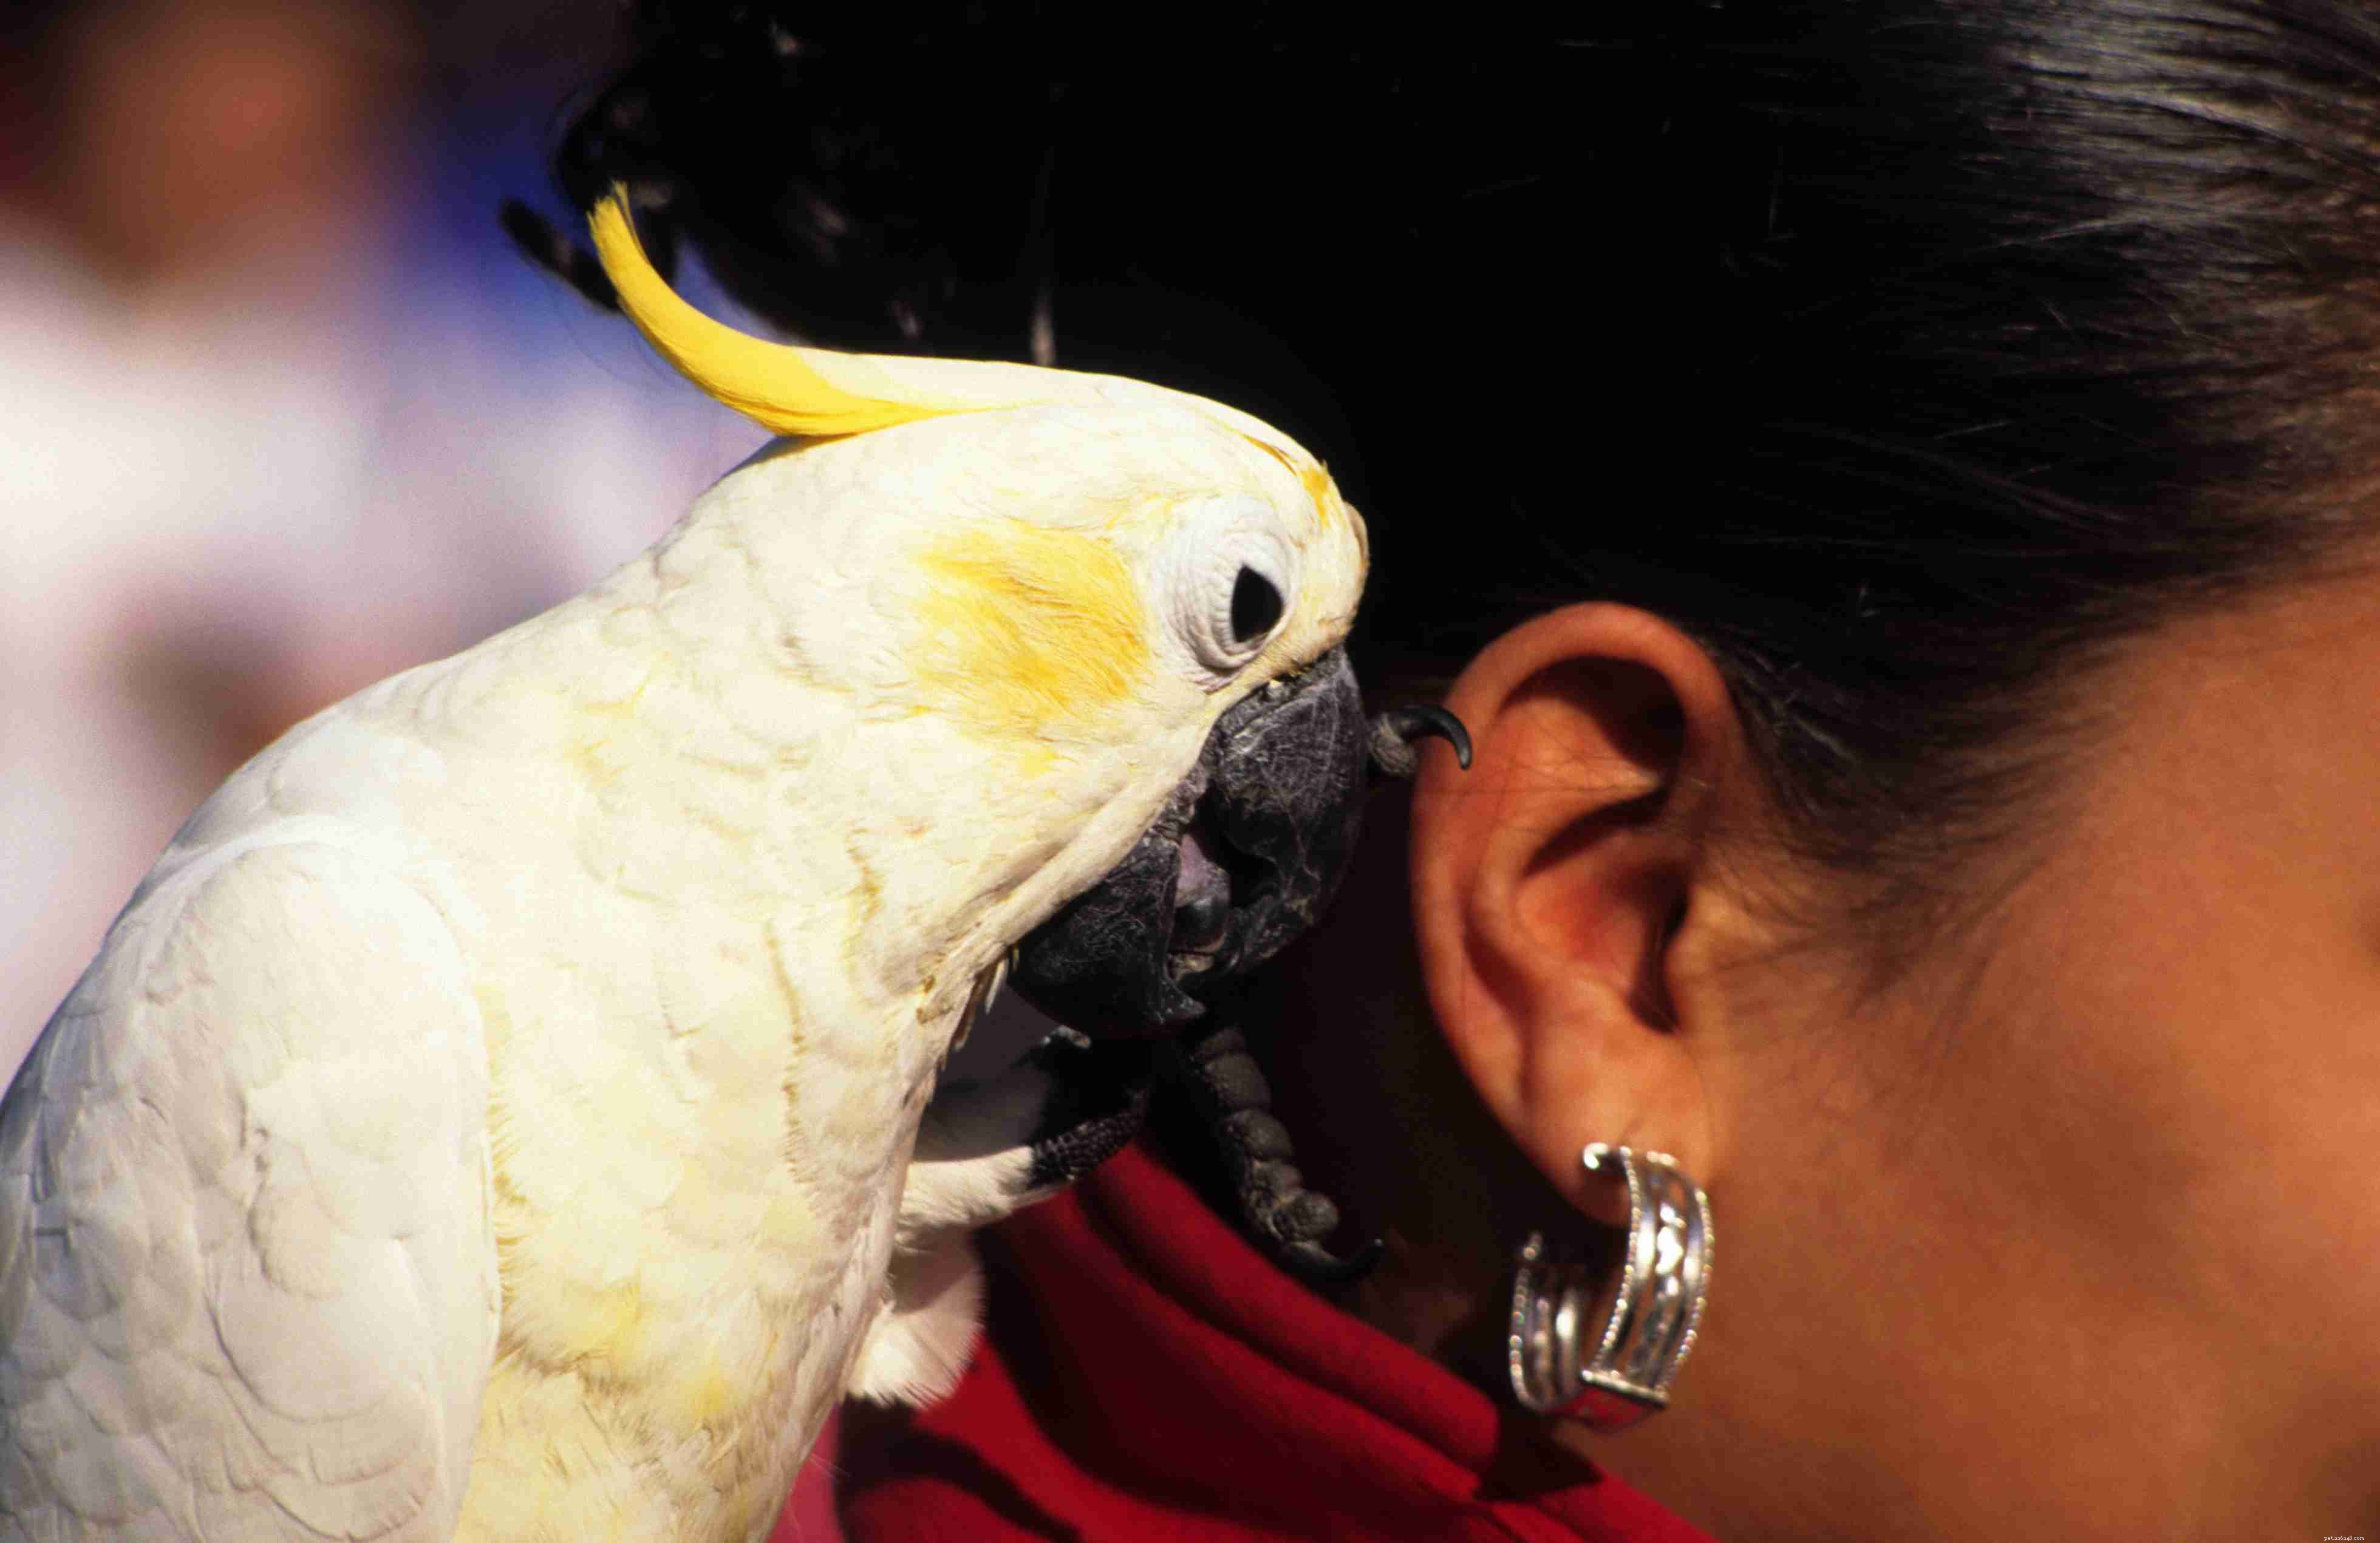 Säkerhetstips för hantering av papegojor